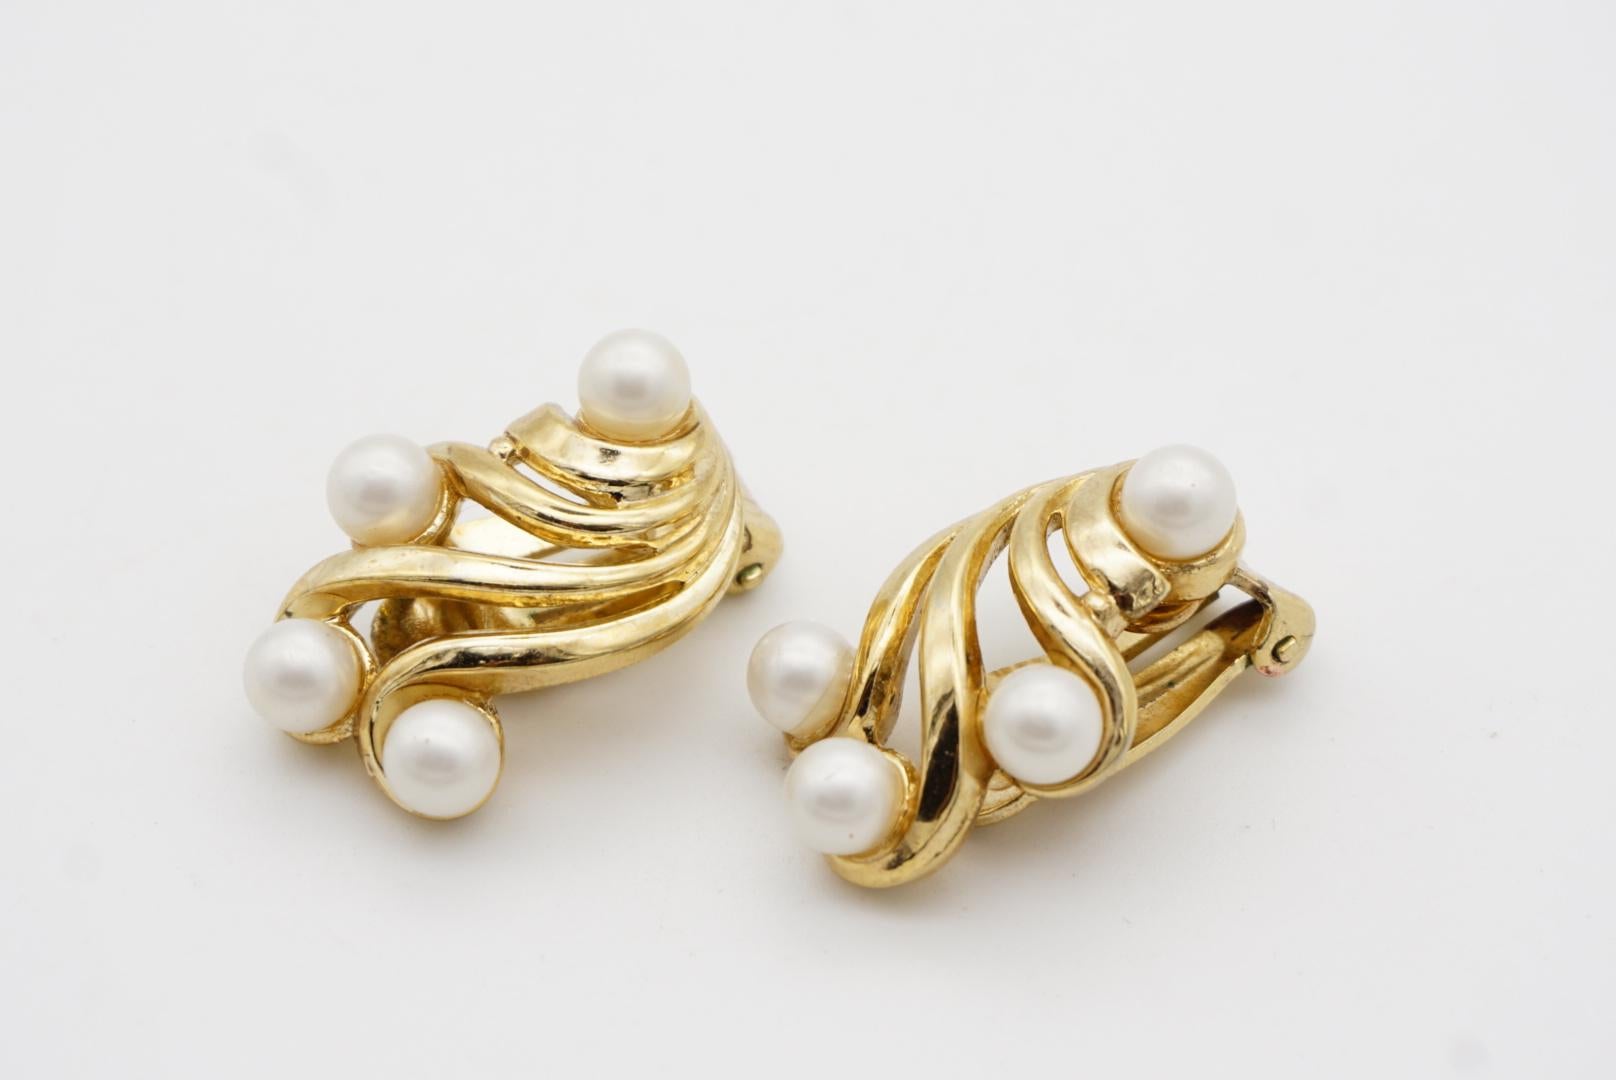 Crown Trifari Vintage 1950s Flower Wing White Pearls Openwork Interlock Earrings For Sale 2